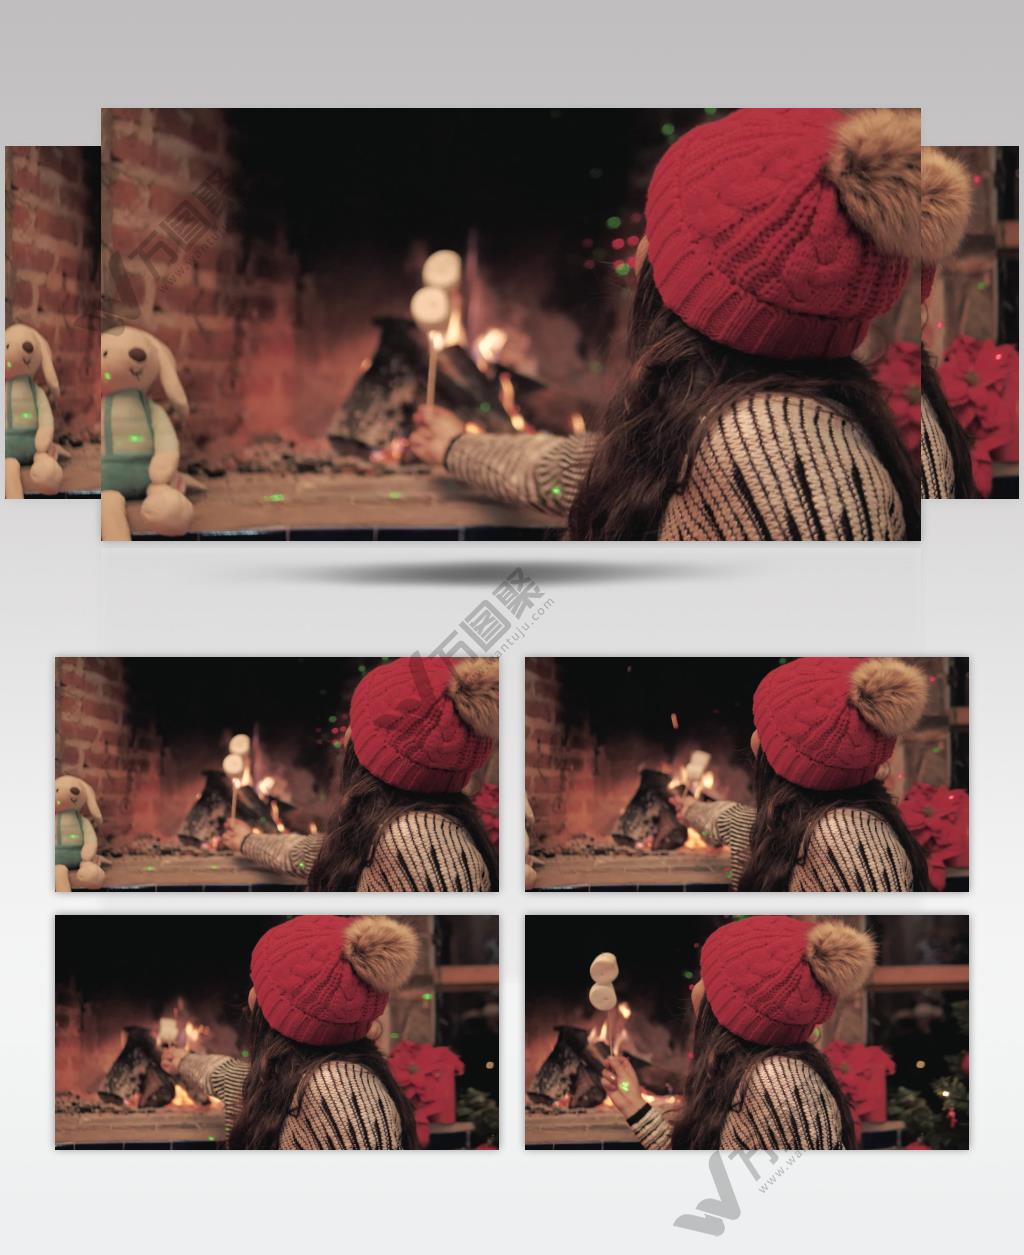 一个女人在壁炉的火中加热棉花糖